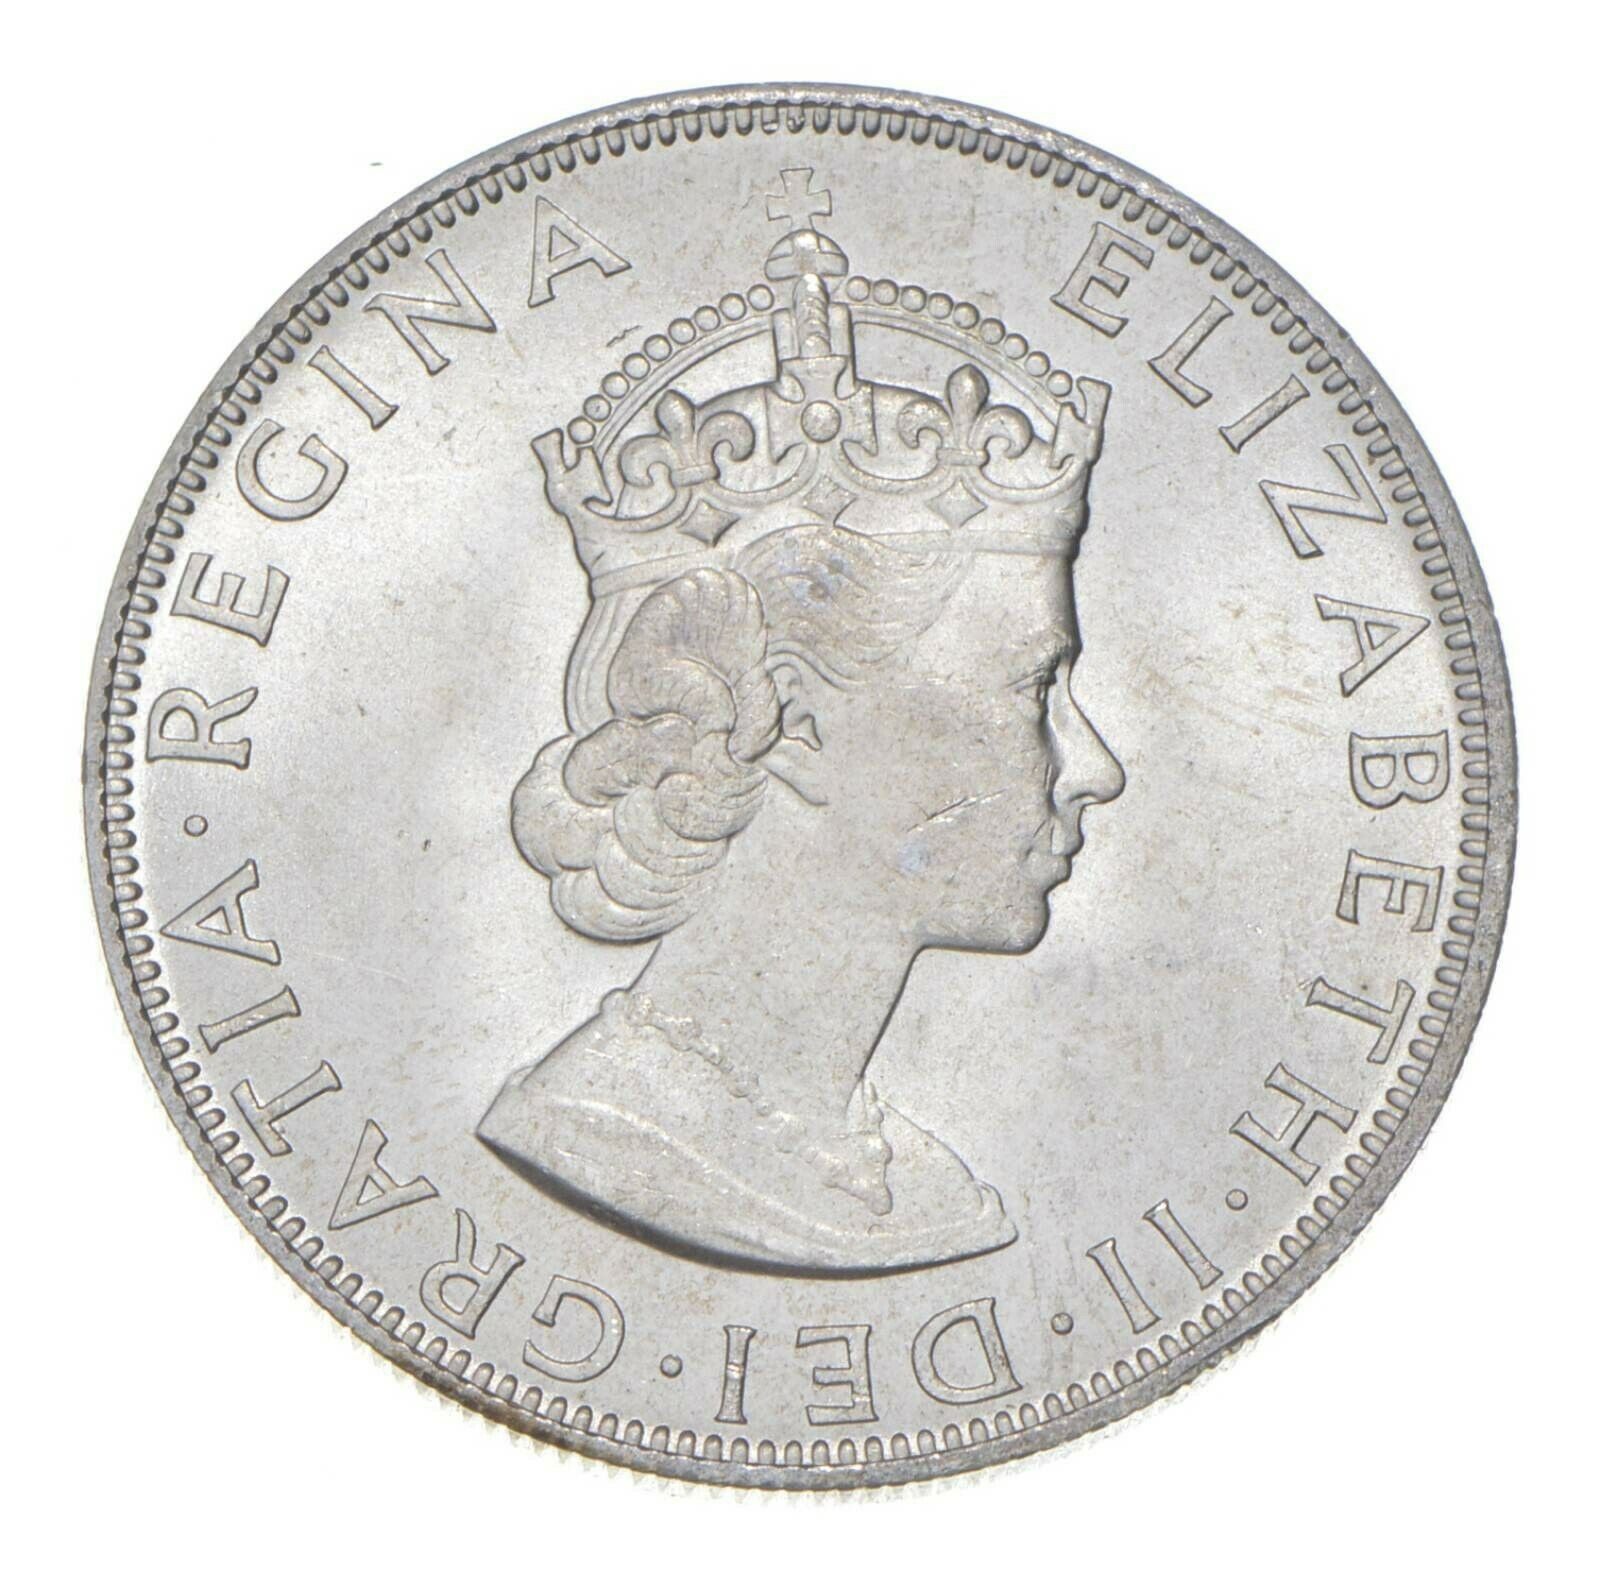 Choice Bu Unc 1964 Bermuda 1 Crown Silver Coin - Mint State *729